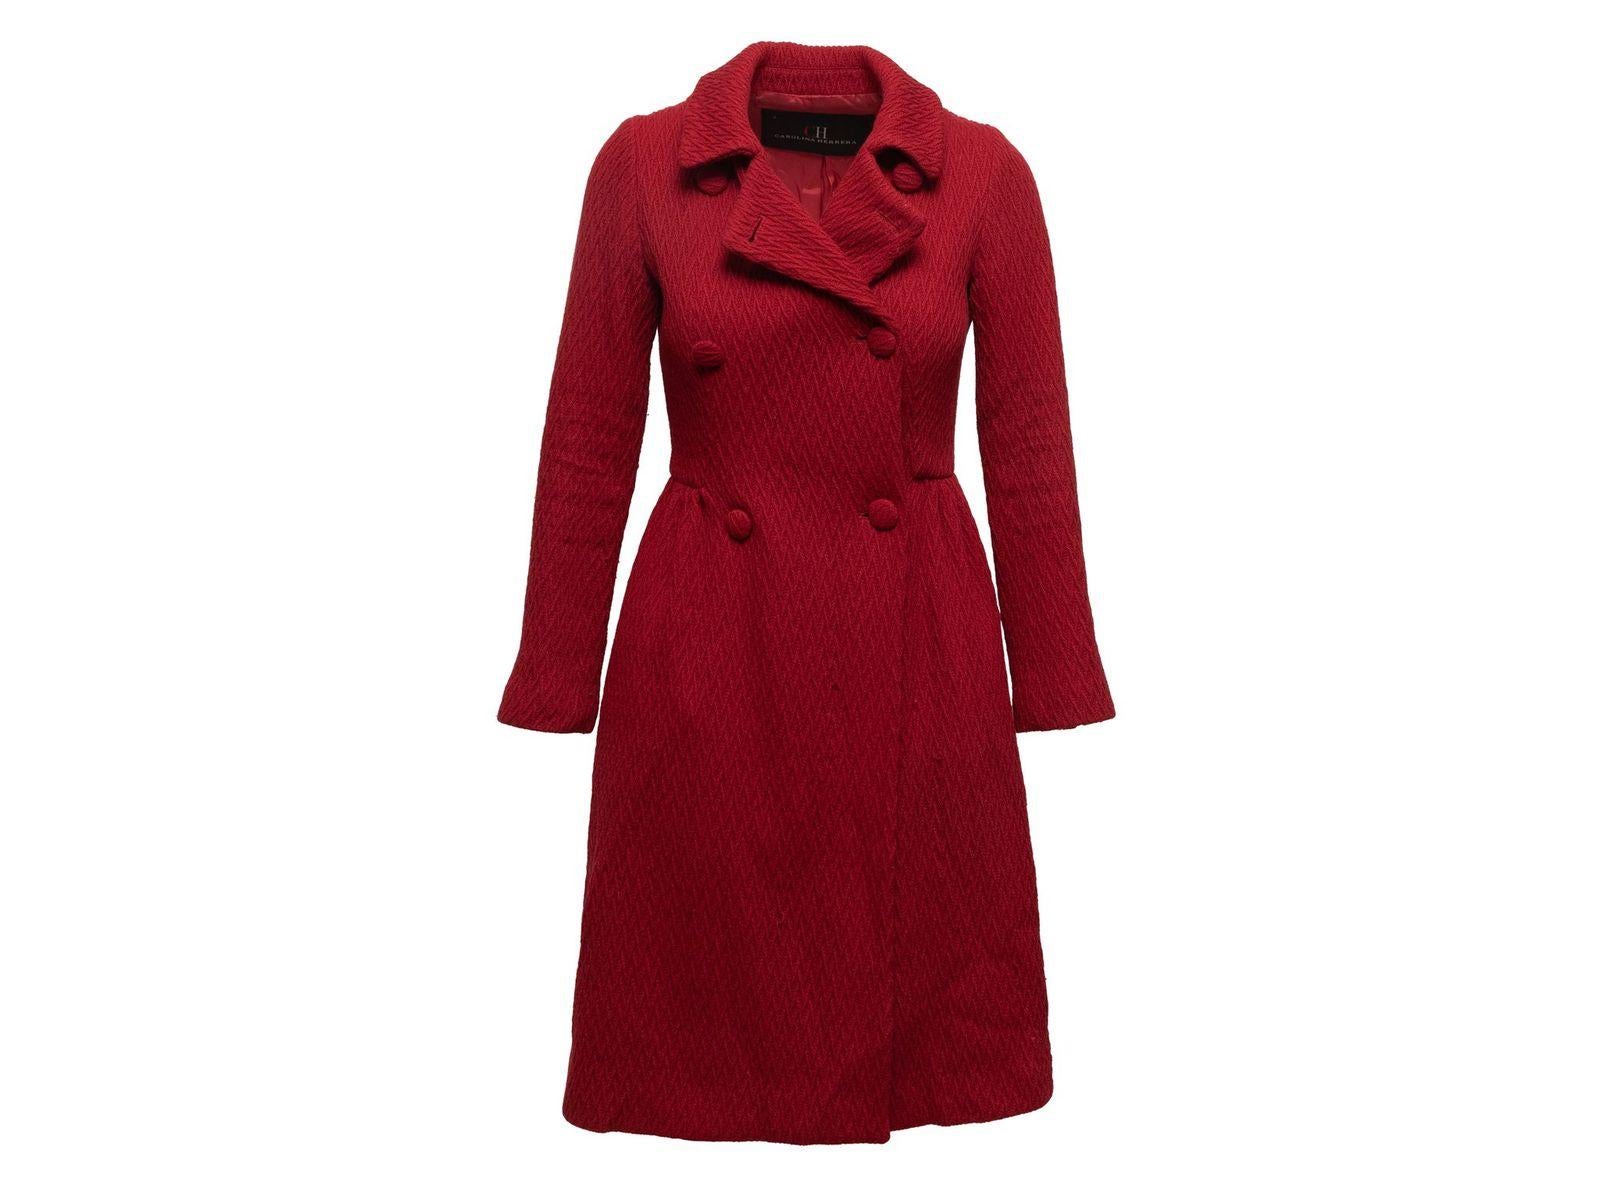 Carolina Herrera Red Wool Textured Coat 1